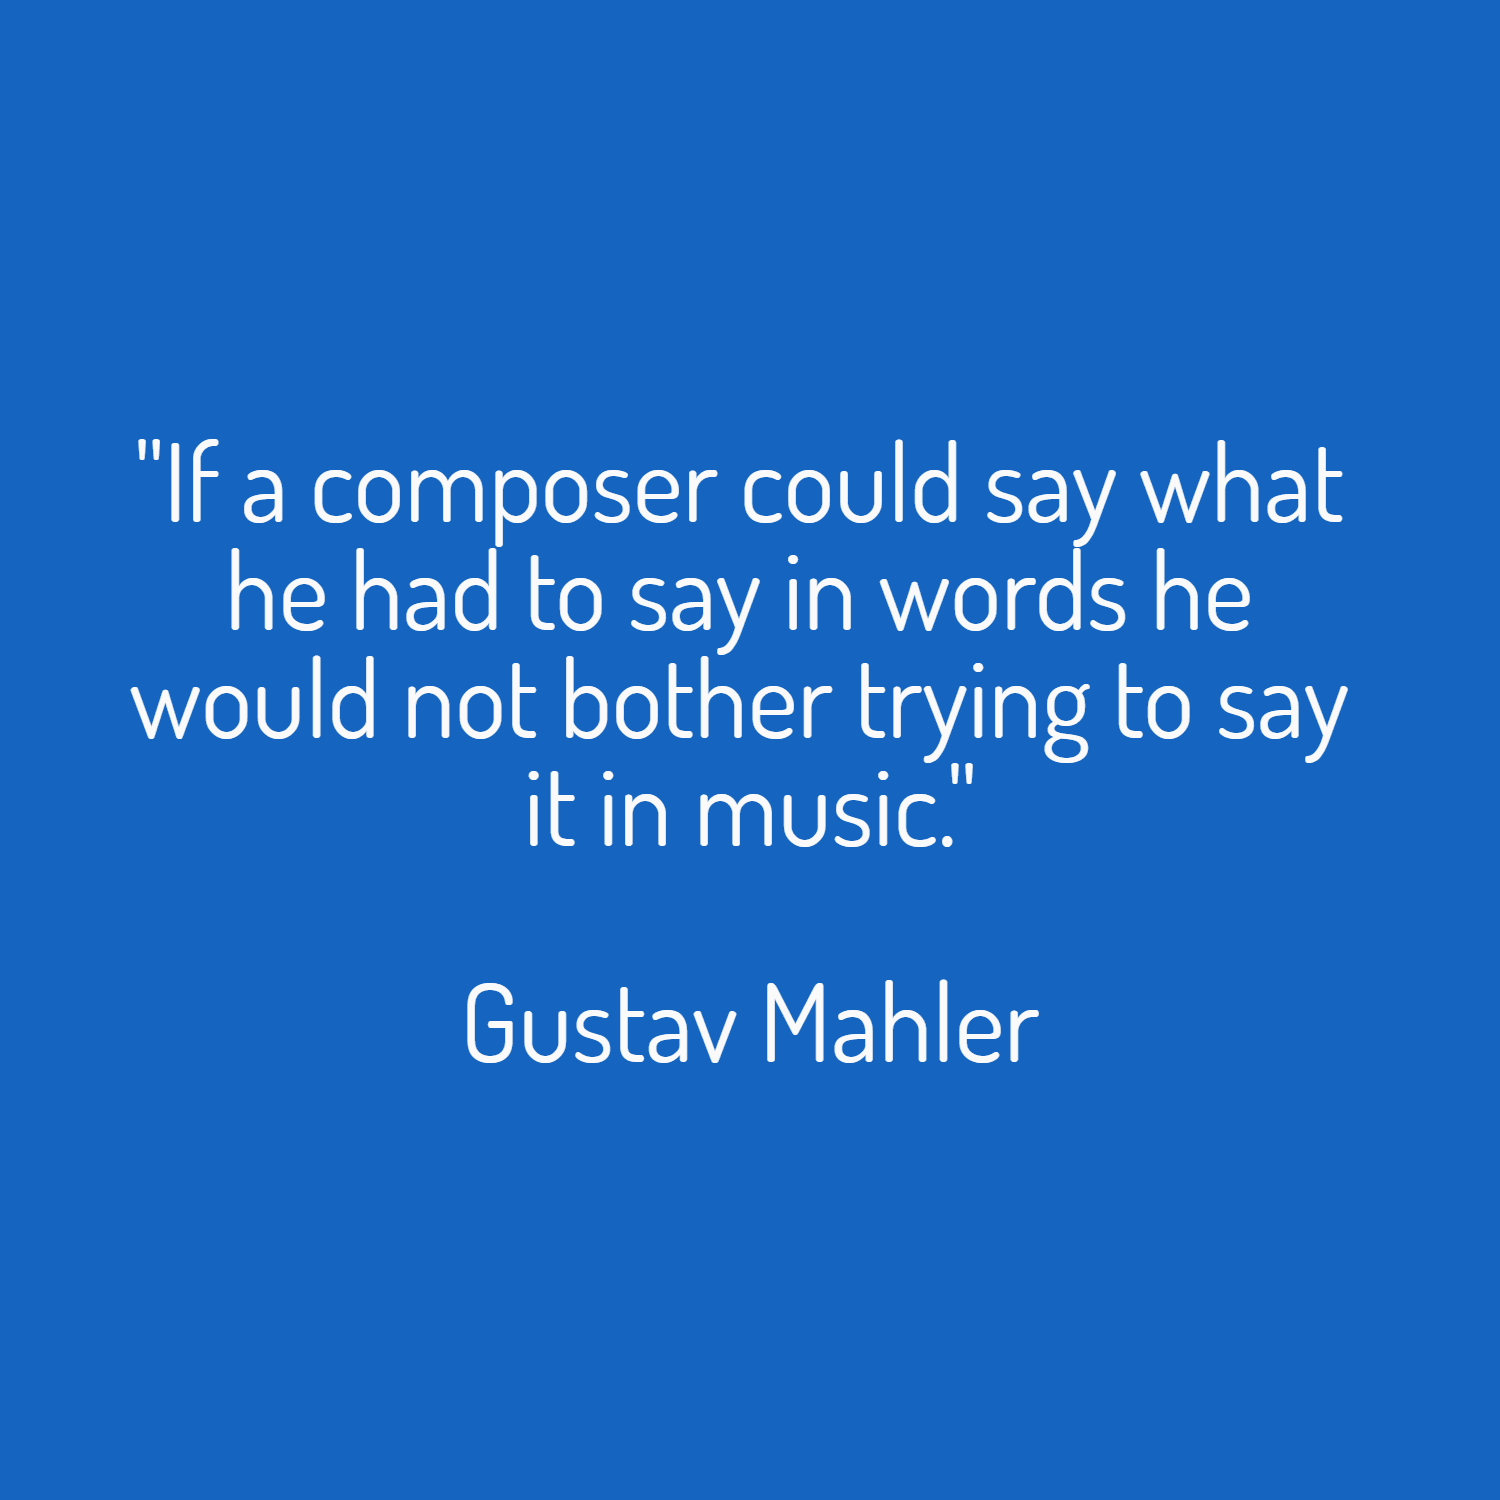 Mahler quote Design 